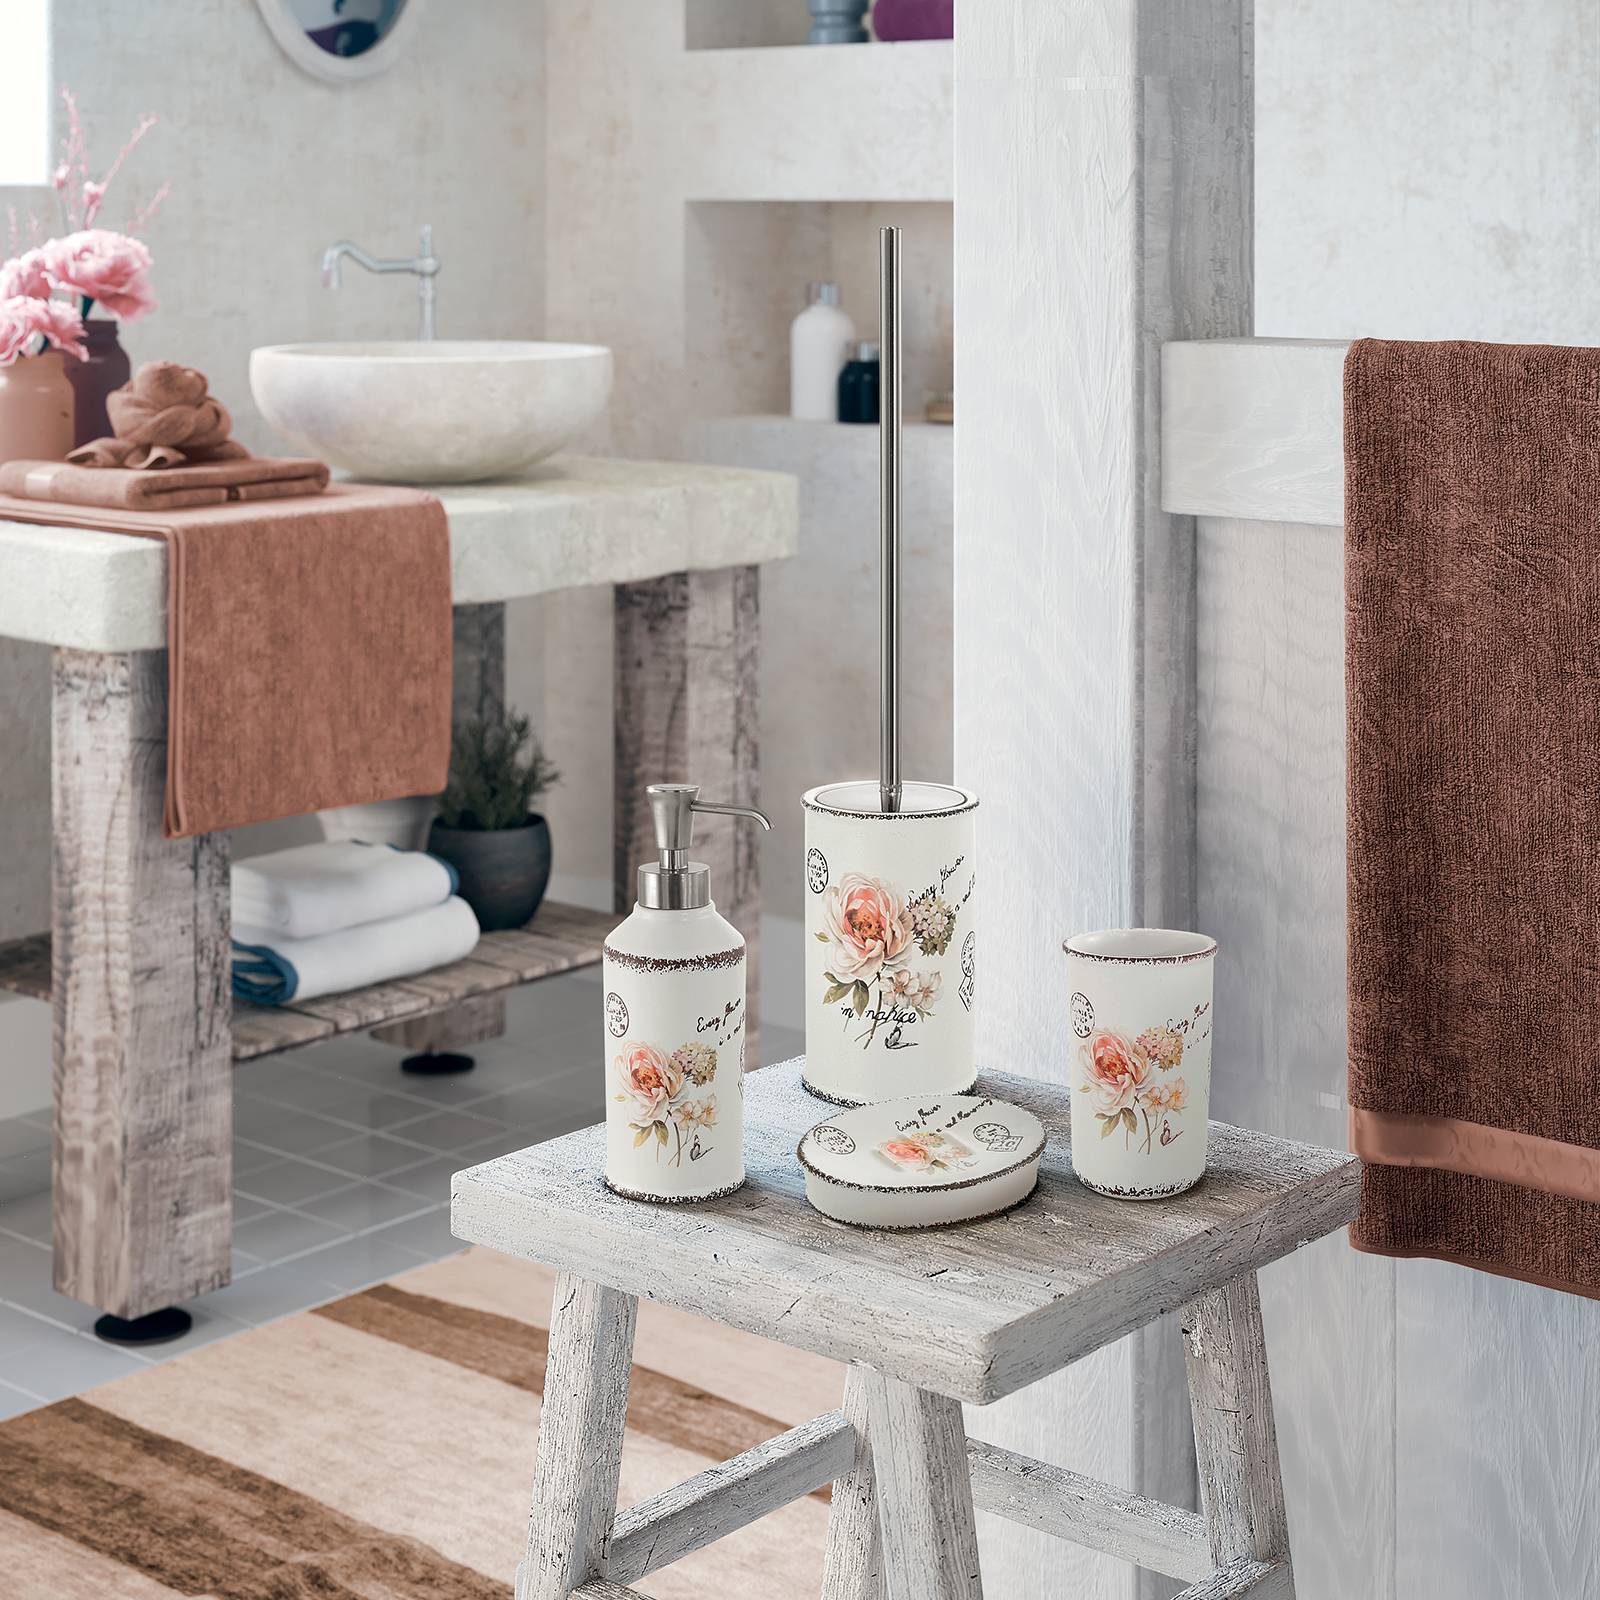 Scopino wc con porta scopino in ceramica Gedy con motivi floreali